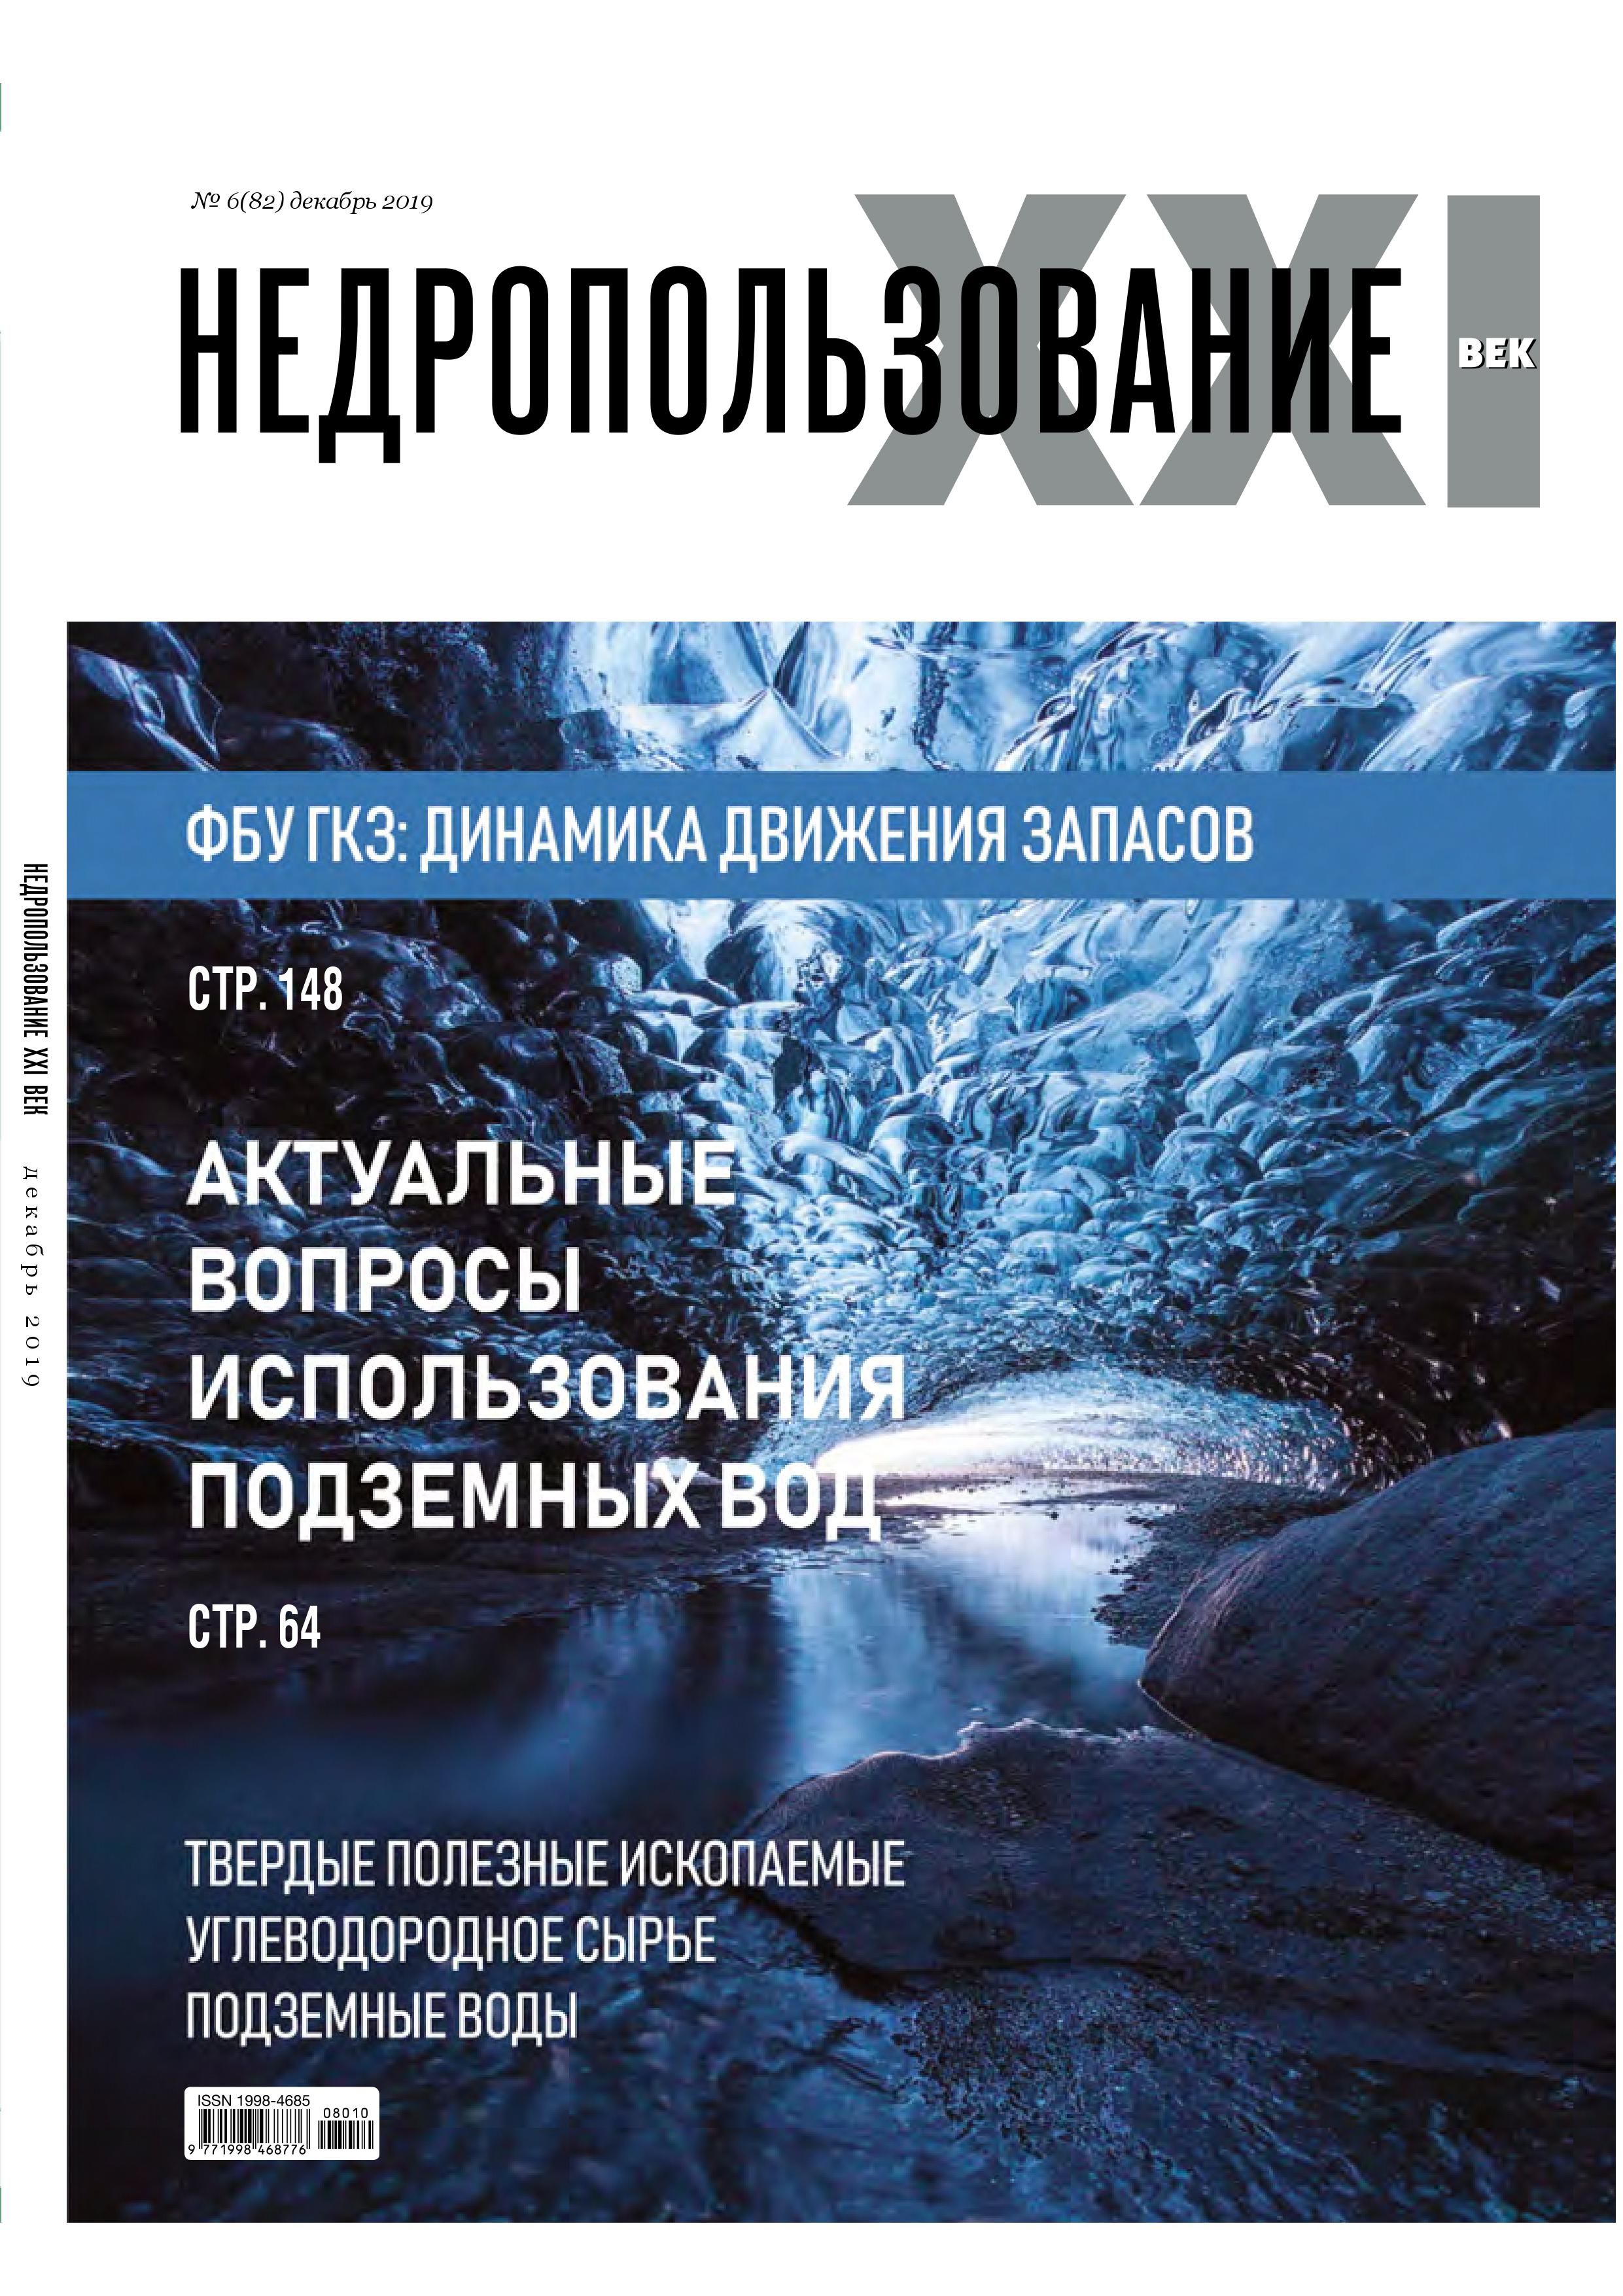 Выход очередного номера журнала "Недропользование XXI век" (№6 - декабрь 2019 г.)